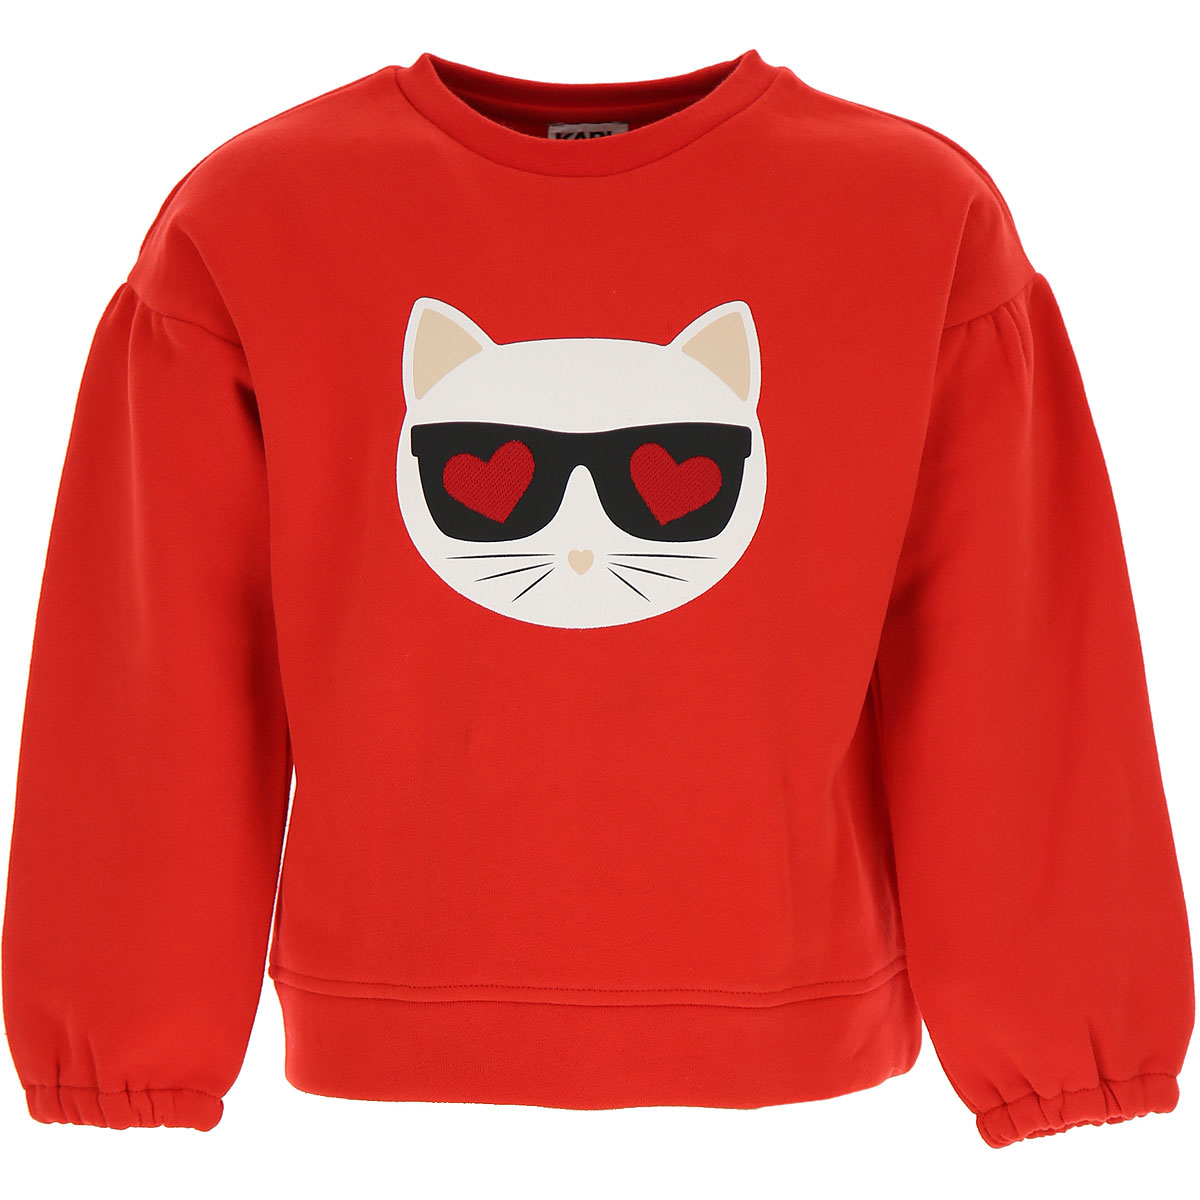 Karl Lagerfeld Kinder Sweatshirt & Kapuzenpullover für Mädchen Günstig im Sale, Rot, Baumwolle, 2017, 12Y 14Y 16Y 8Y